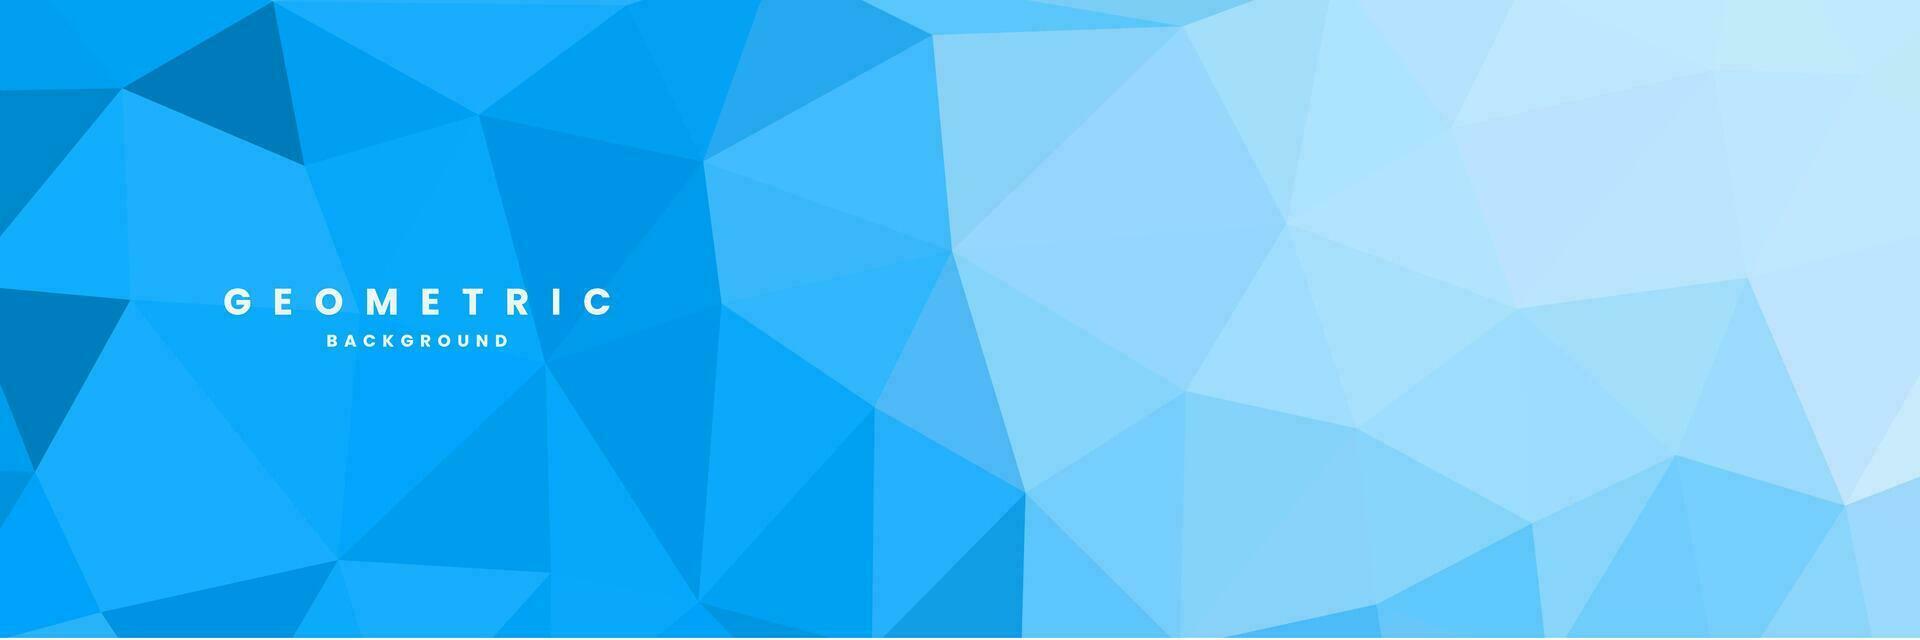 abstracte blauwe achtergrond met driehoeken vector